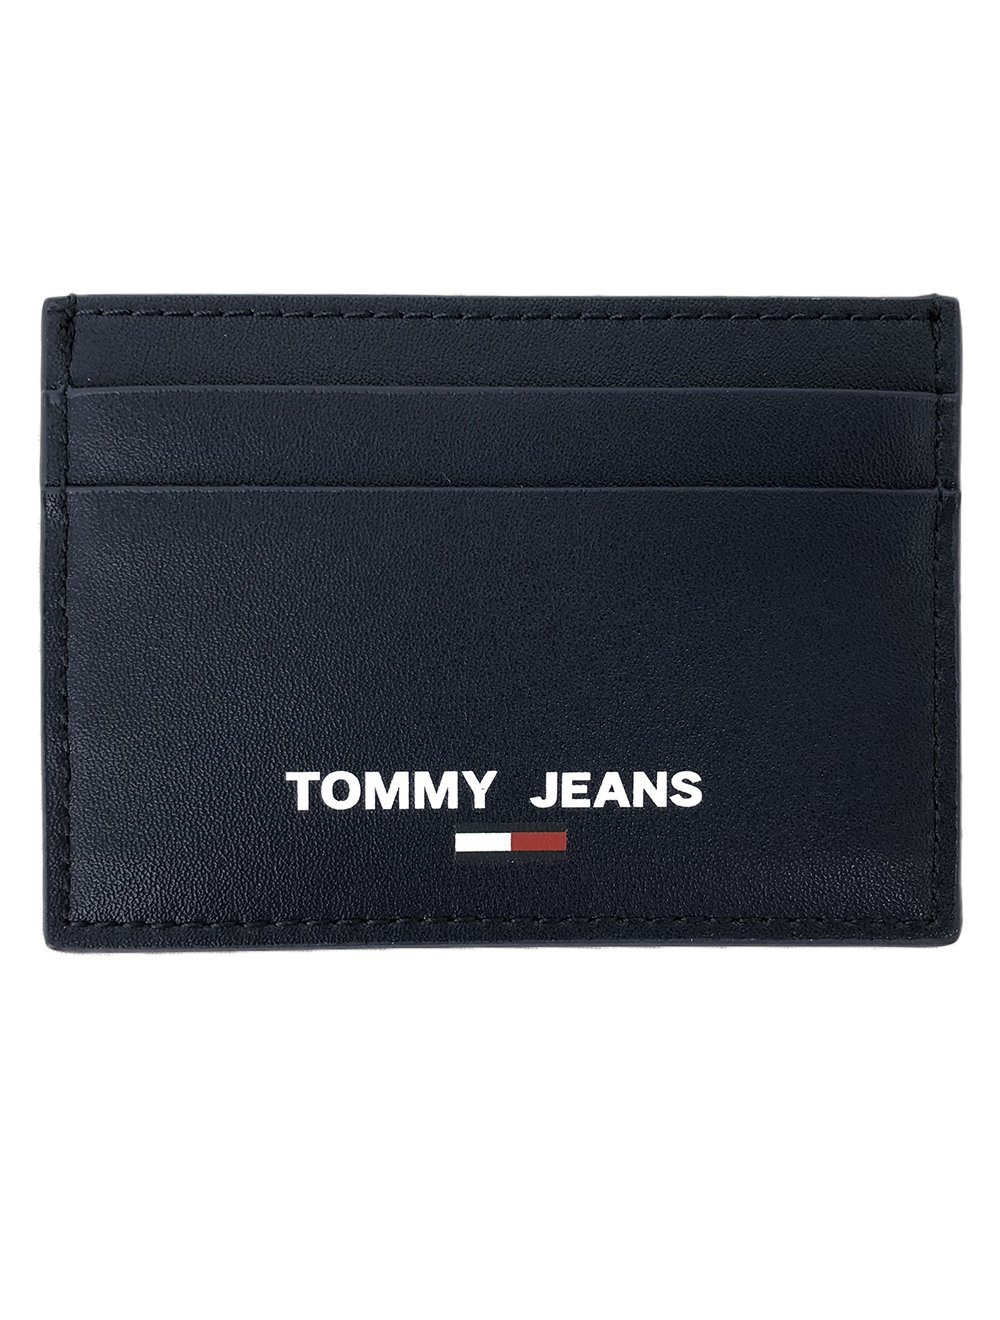 Carteira Tommy Jeans Masculina Porta Cartão Couro Essential CC Holder Azul Marinho